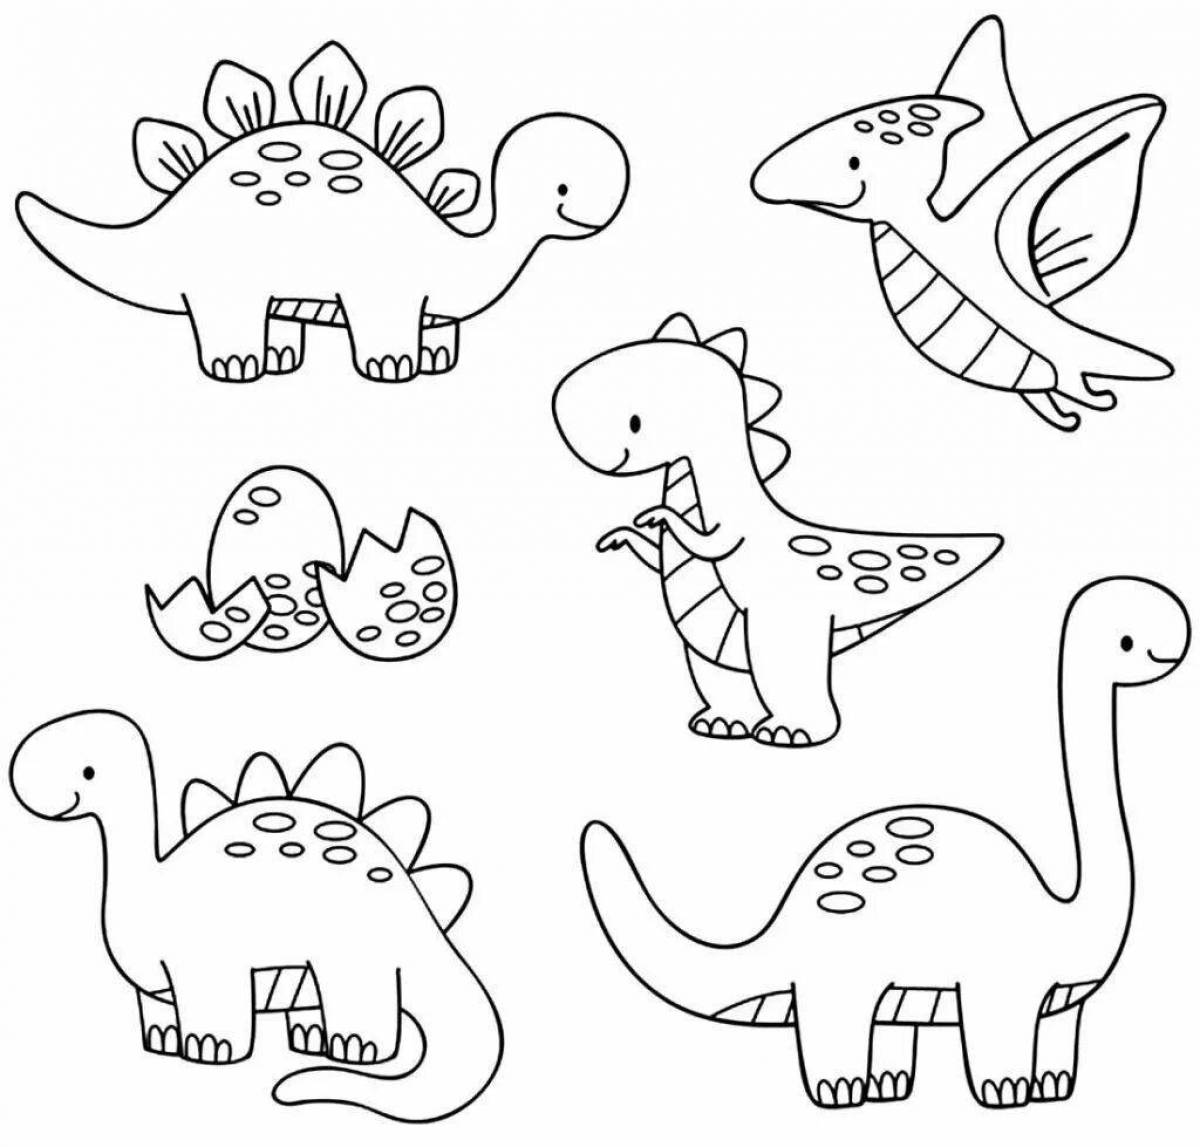 Привлекательные рисунки динозавров для раскрашивания